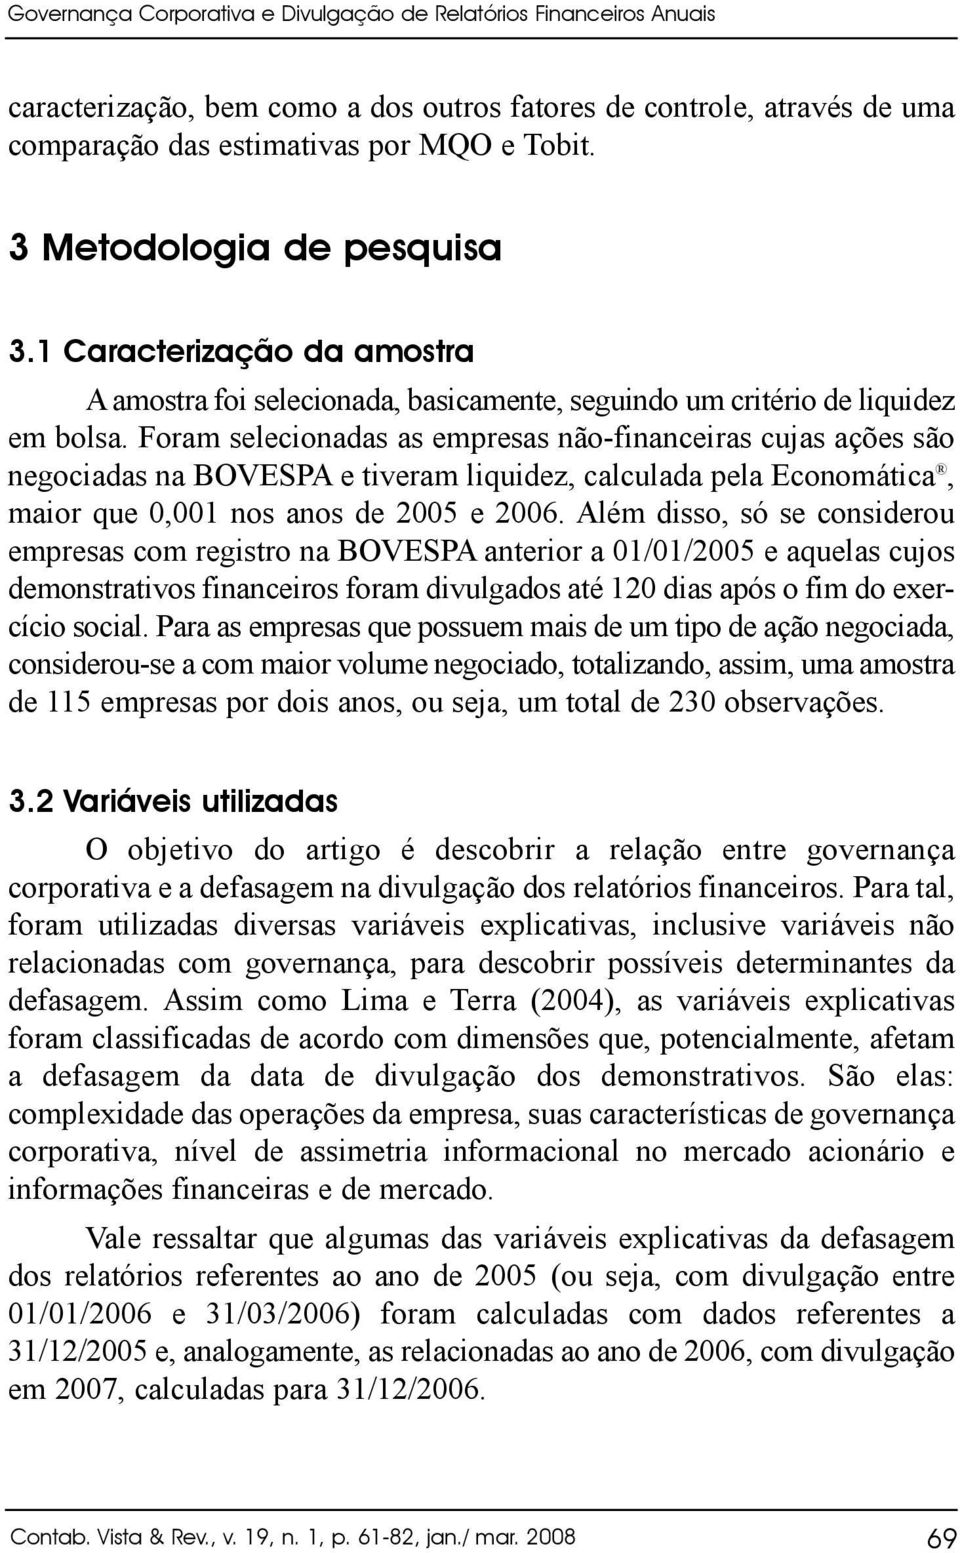 Foram selecionadas as empresas não-financeiras cujas ações são negociadas na BOVESPA e tiveram liquidez, calculada pela Economática, maior que 0,00 nos anos de 2005 e 2006.